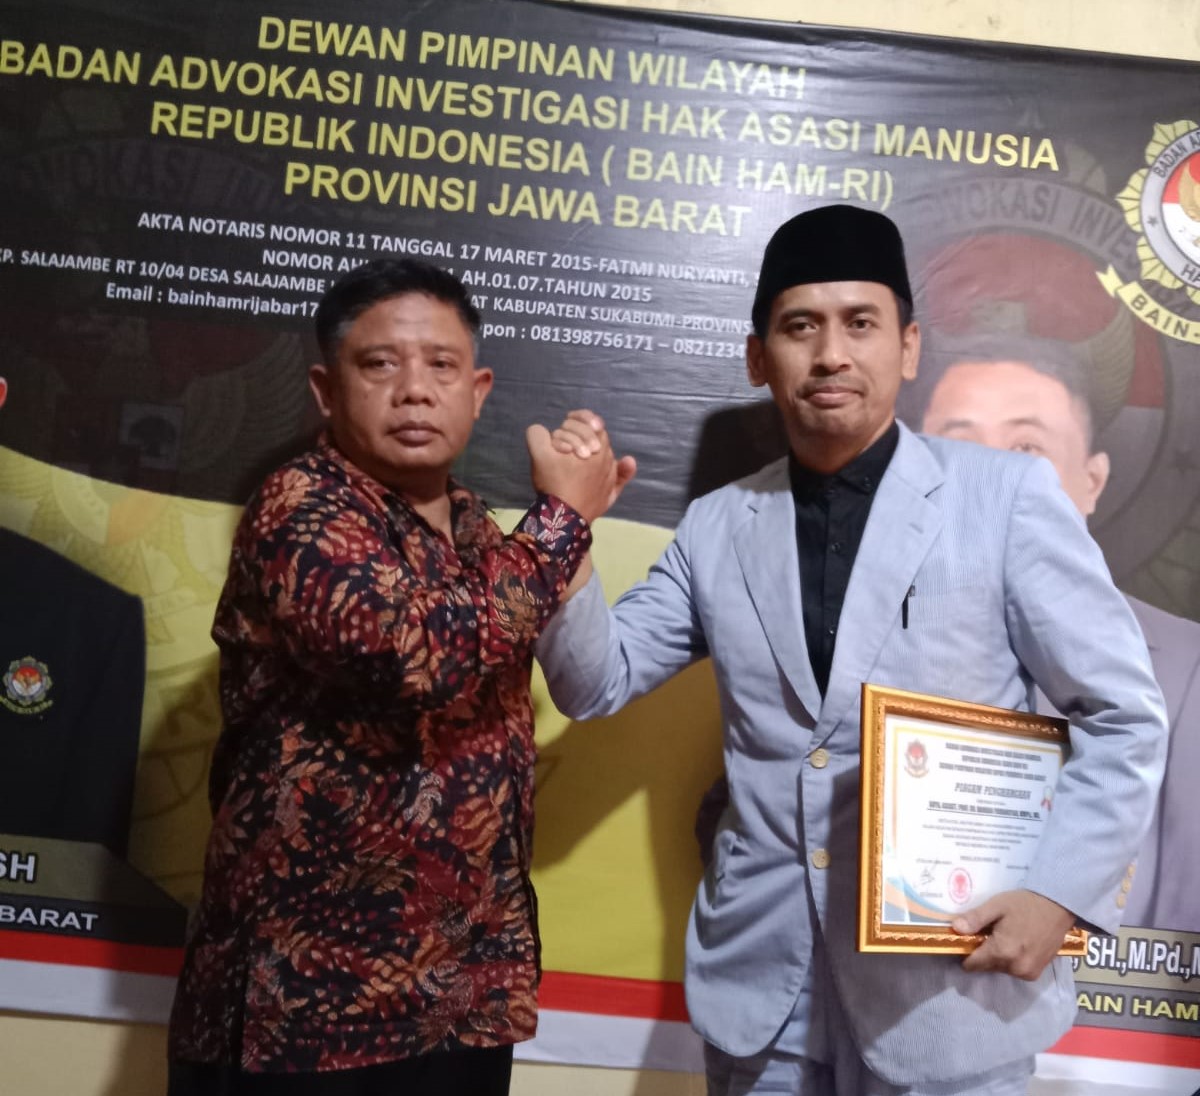 Salam sinergi Ketua DPW  BAIN HAM RI Jawa Barat dengan Ketua Dewan Penasihat